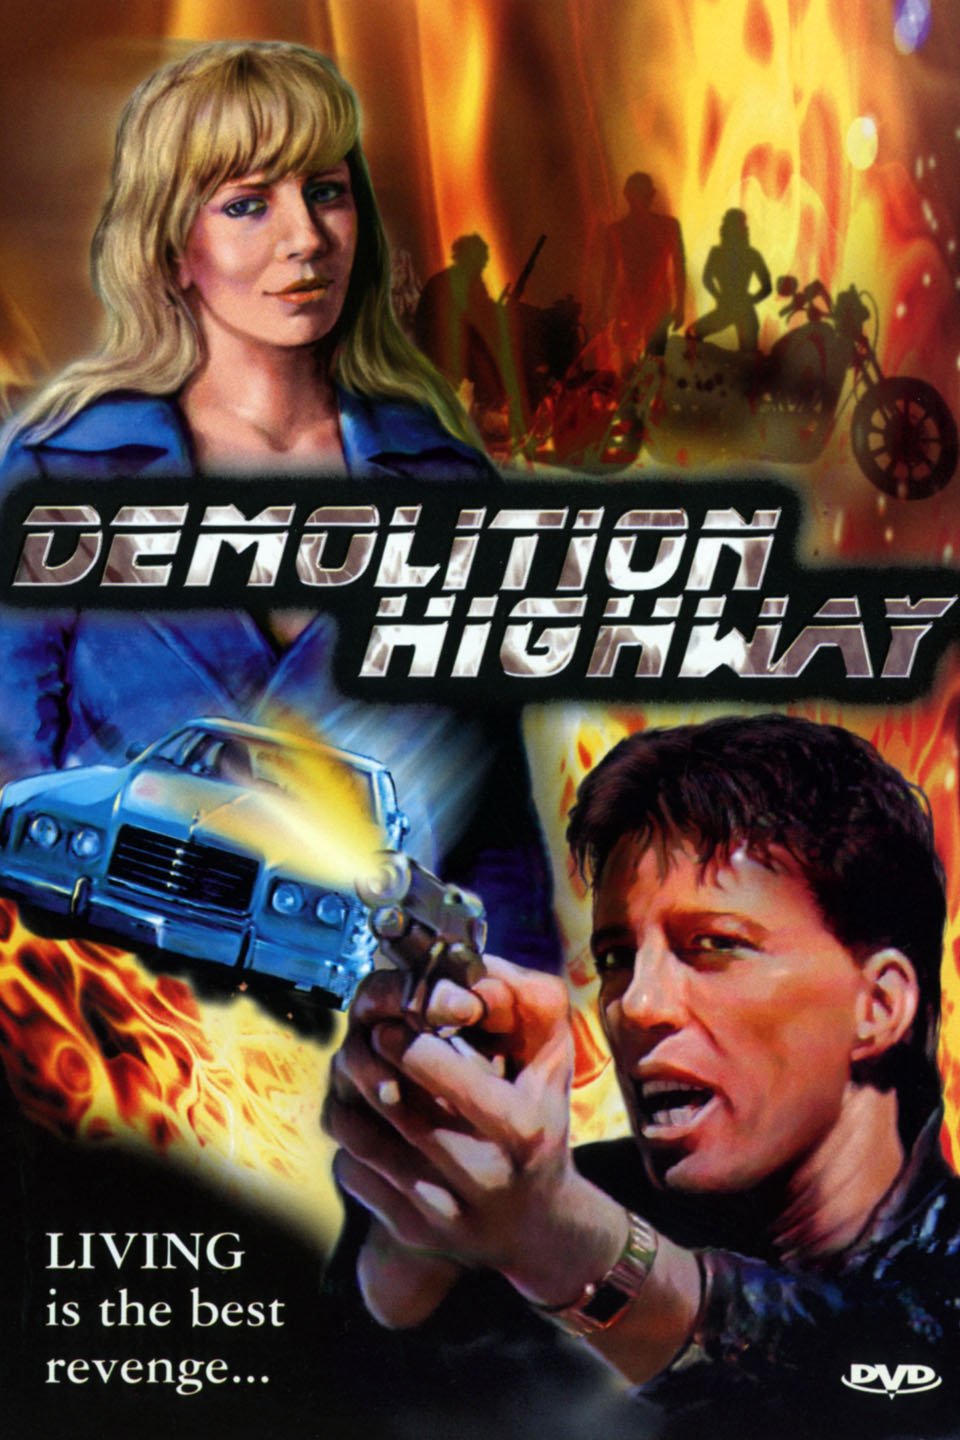 Demolition Highway (1996) Screenshot 2